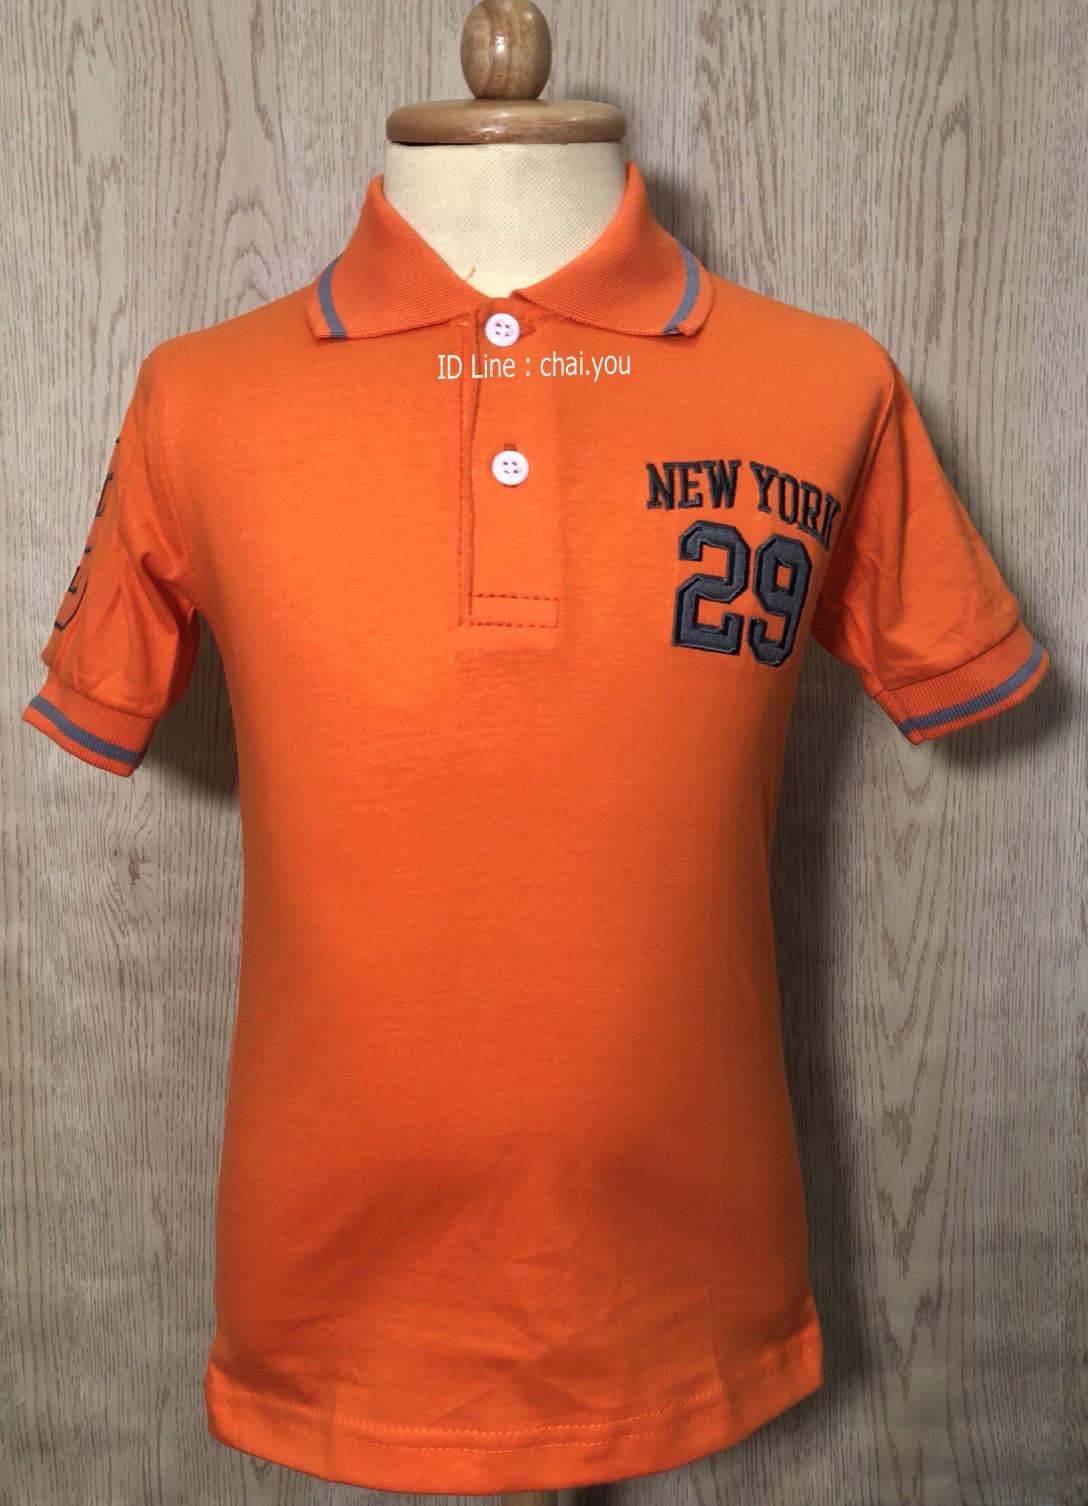 เสื้อโปโลเด็ก  ปัก NEW YORK 29 #สินค้าพร้อมส่ง#